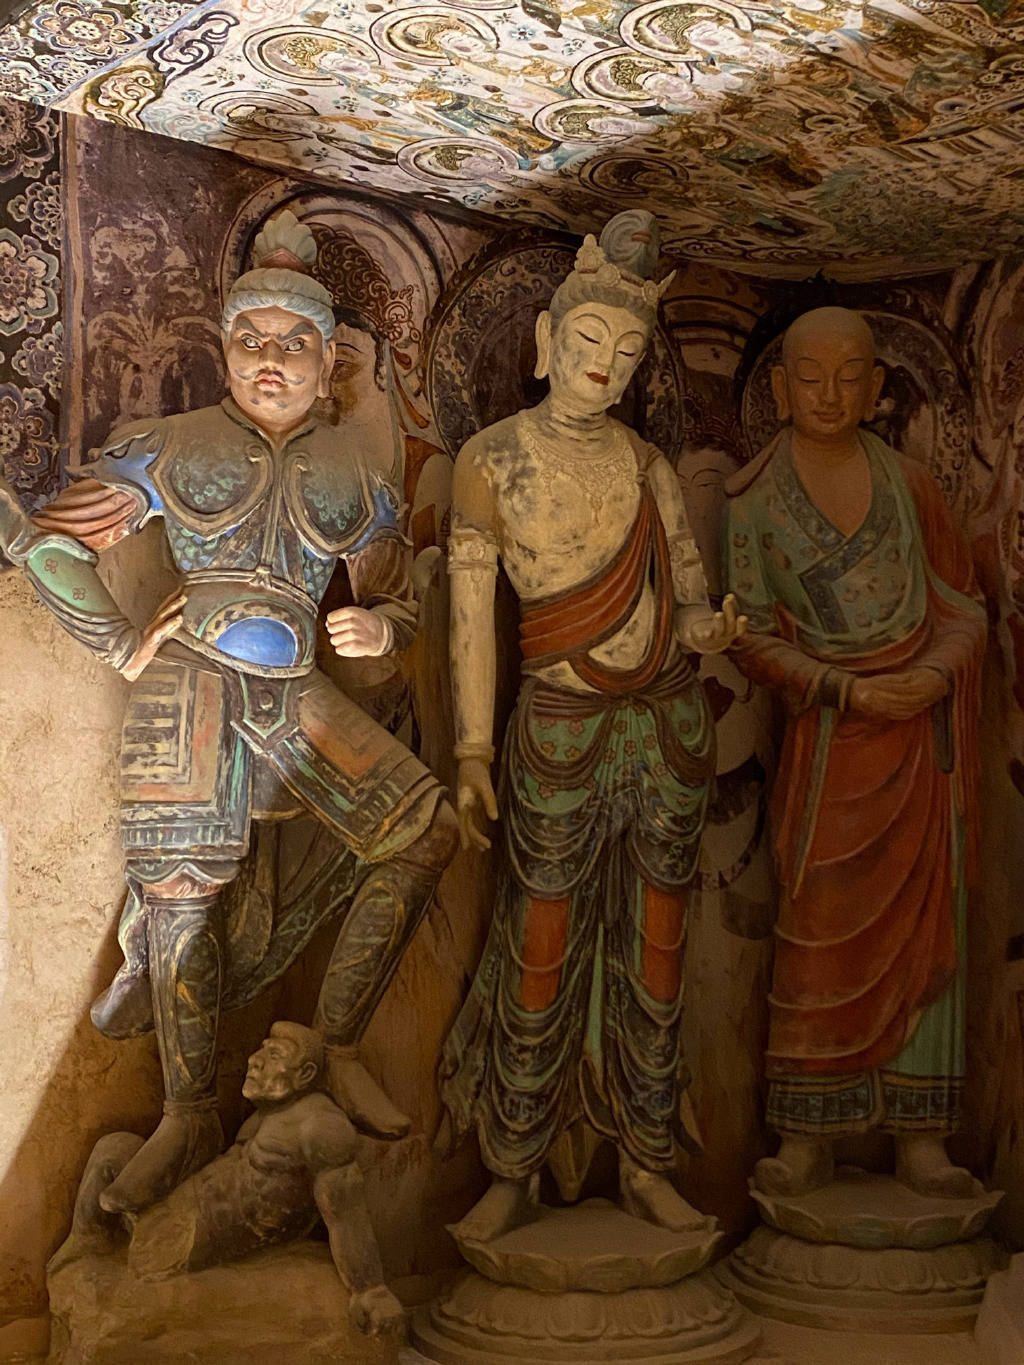 敦煌博物馆莫高窟45号窟保存了千年前盛唐时期精美塑像